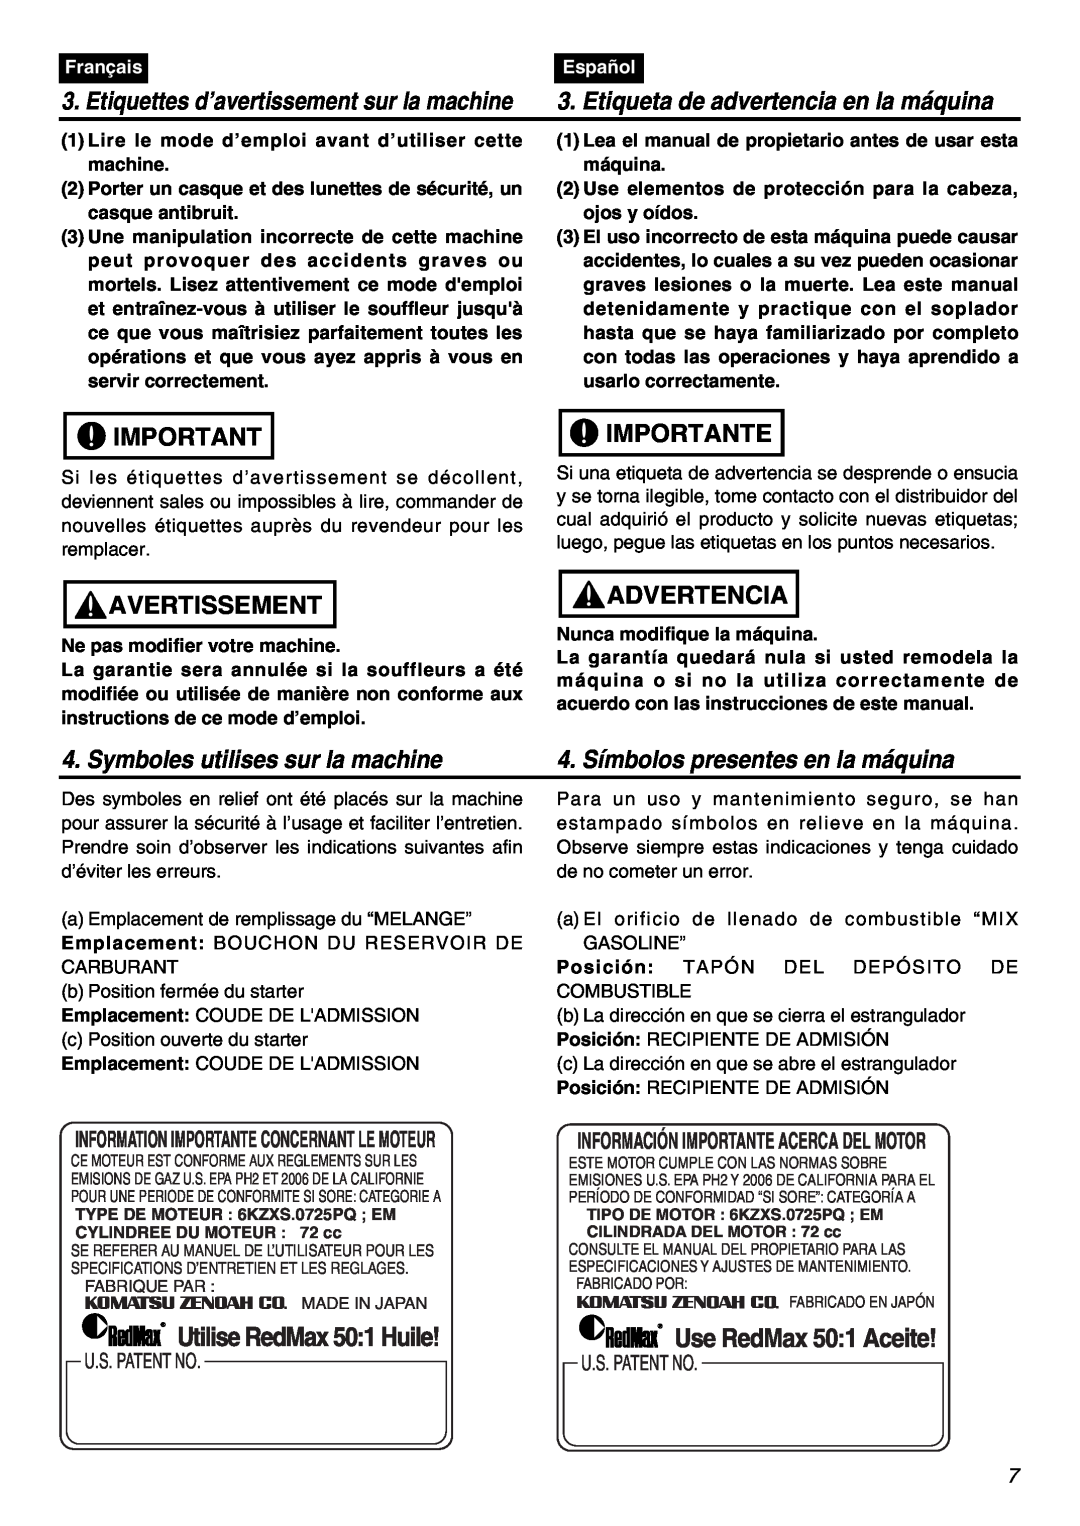 RedMax EBZ8001 Symboles utilises sur la machine, 4. Símbolos presentes en la máquina, Avertissement, Importante, Français 